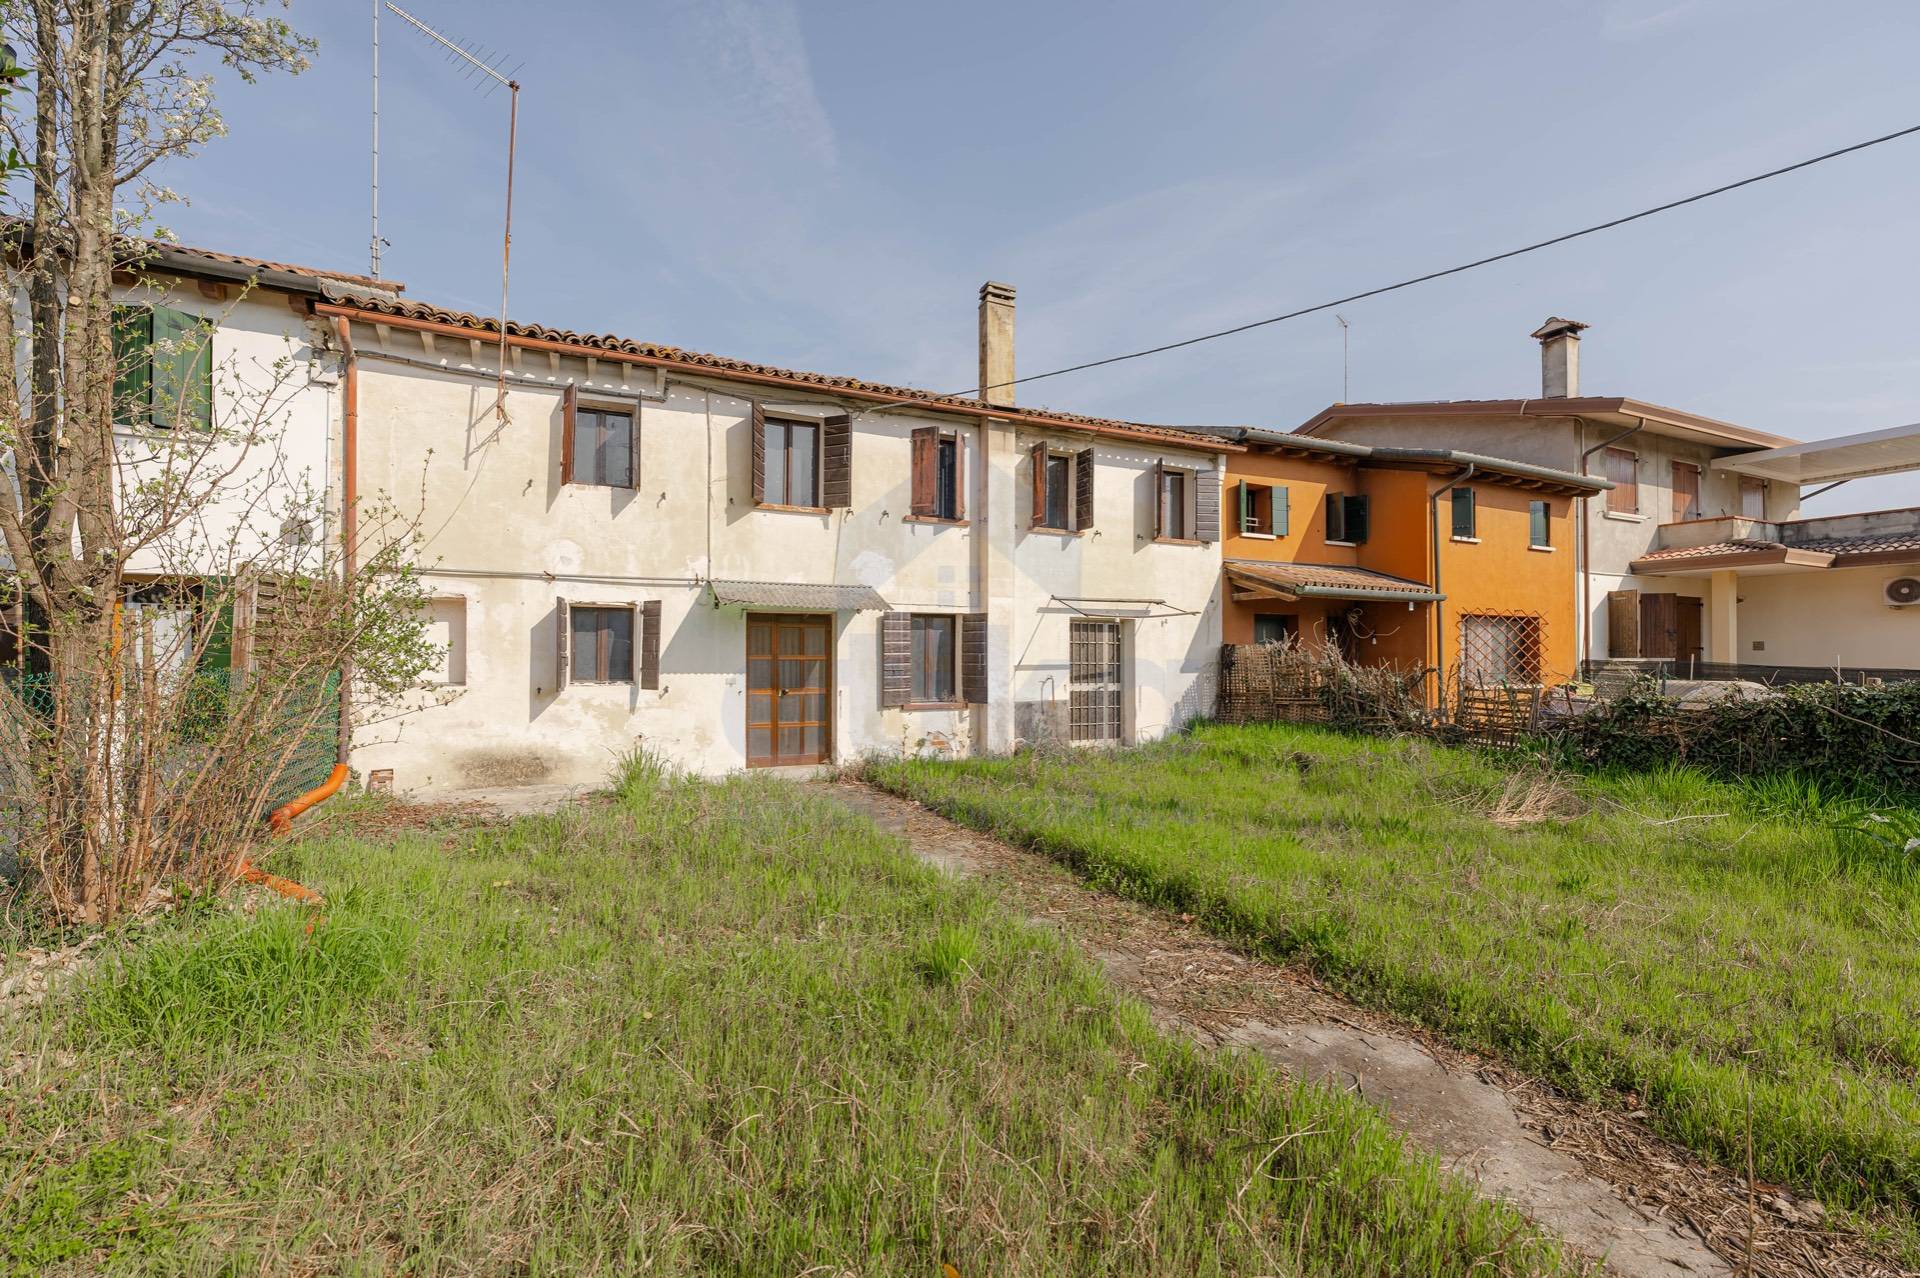 Villa a Schiera in vendita a Morgano, 5 locali, zona ere, prezzo € 55.000 | PortaleAgenzieImmobiliari.it